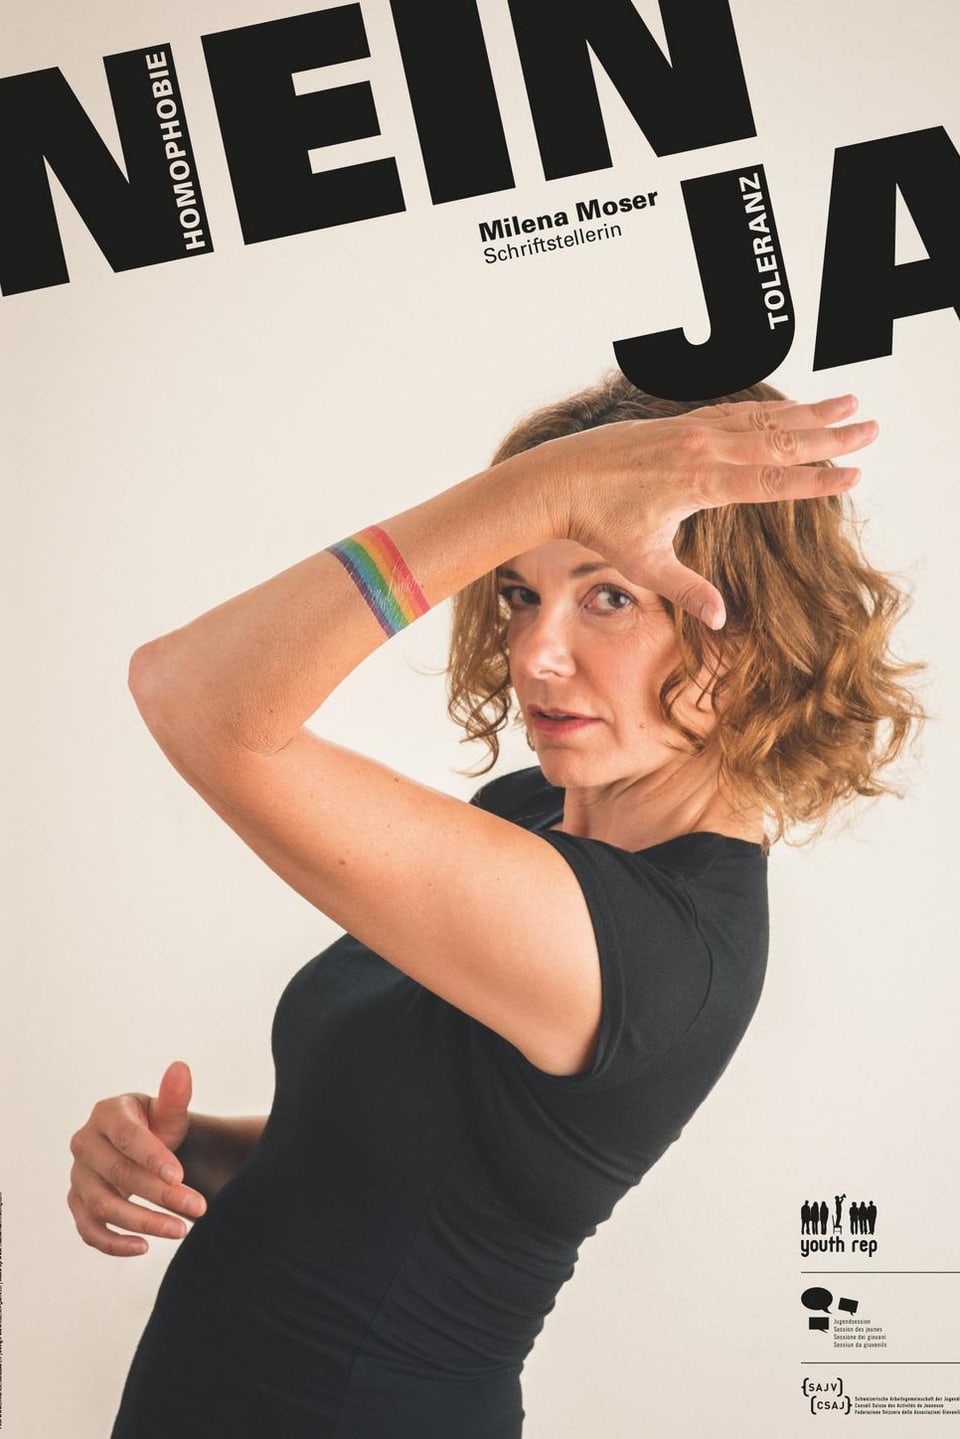 Milena Moser posiert mit einem Regenbogen um den Arm auf dem Plakat